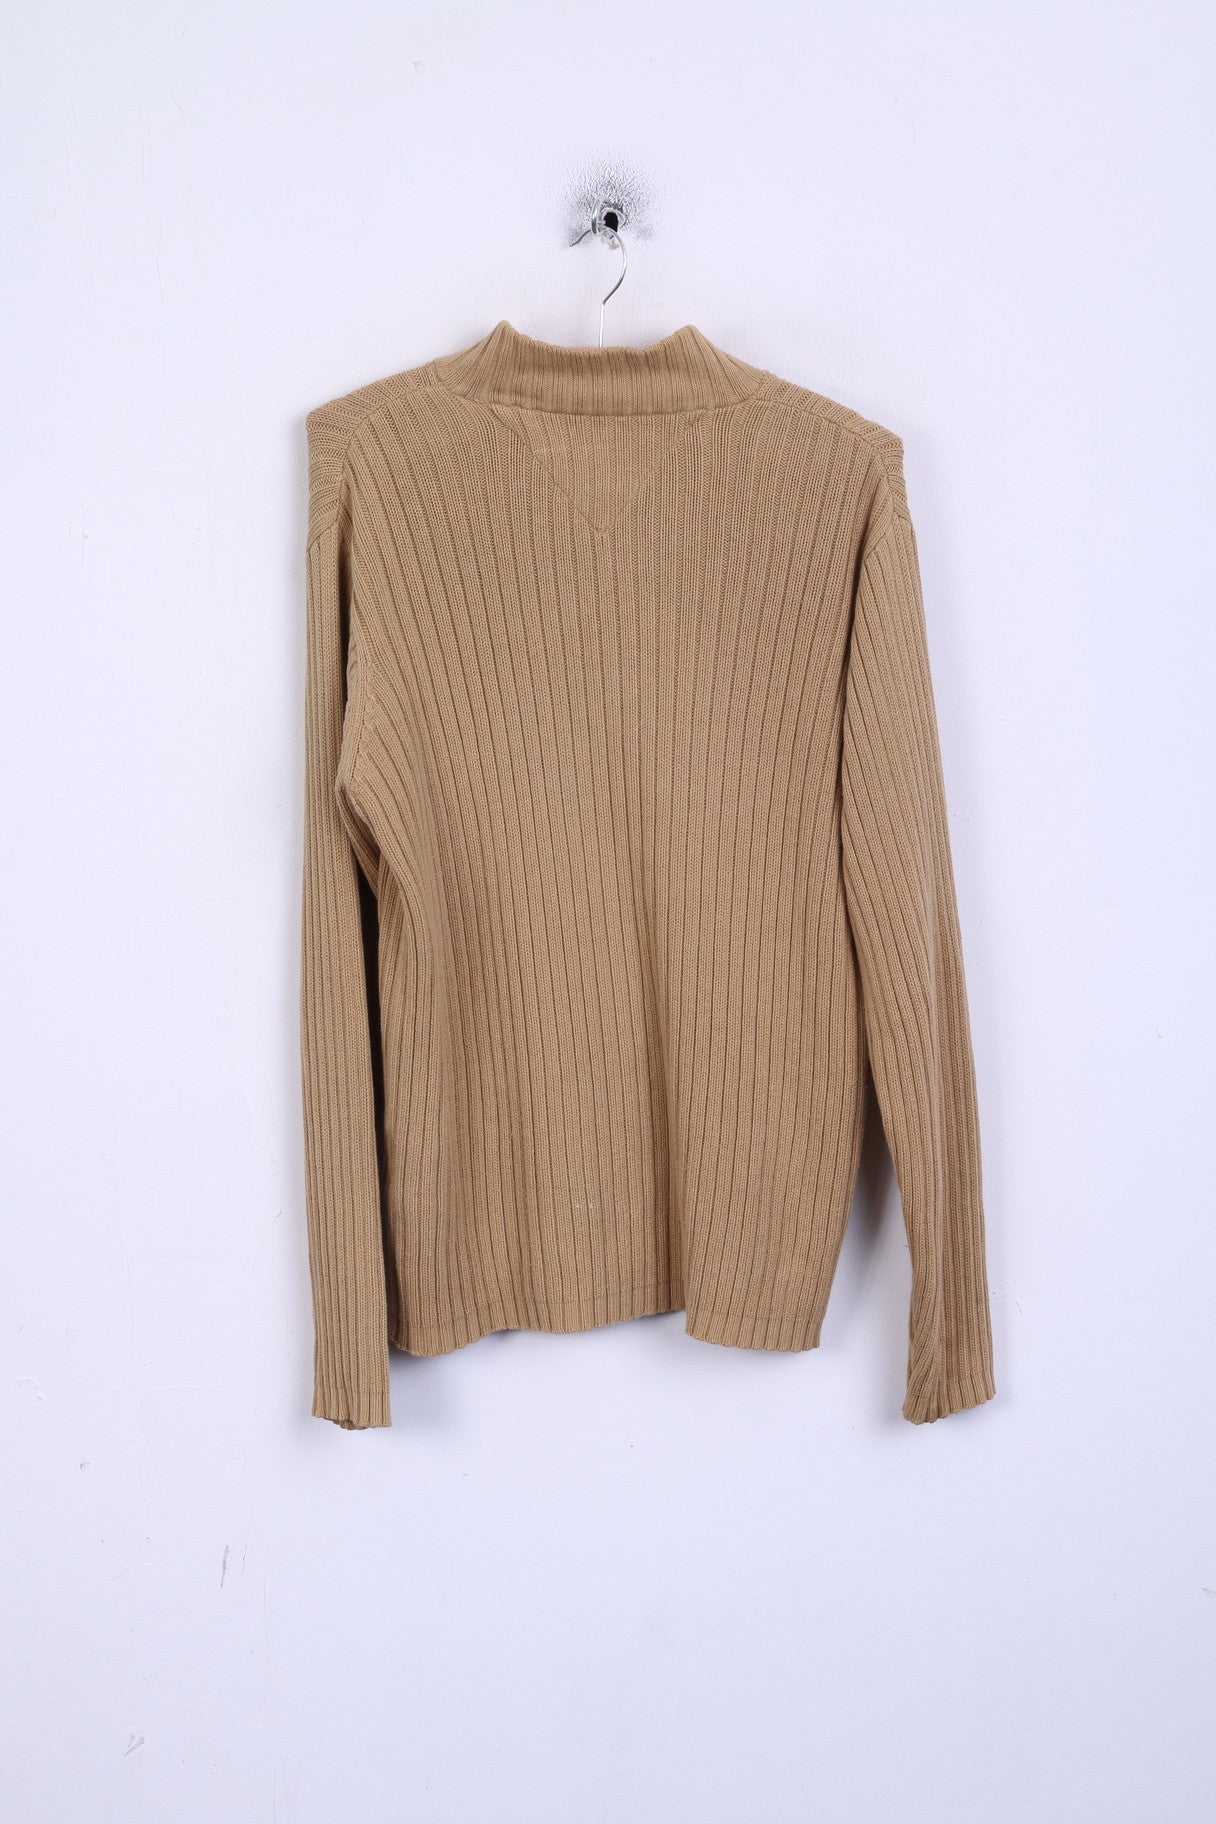 Maglione maglione da uomo Tommy Hilfiger L color cammello in cotone lavorato a maglia